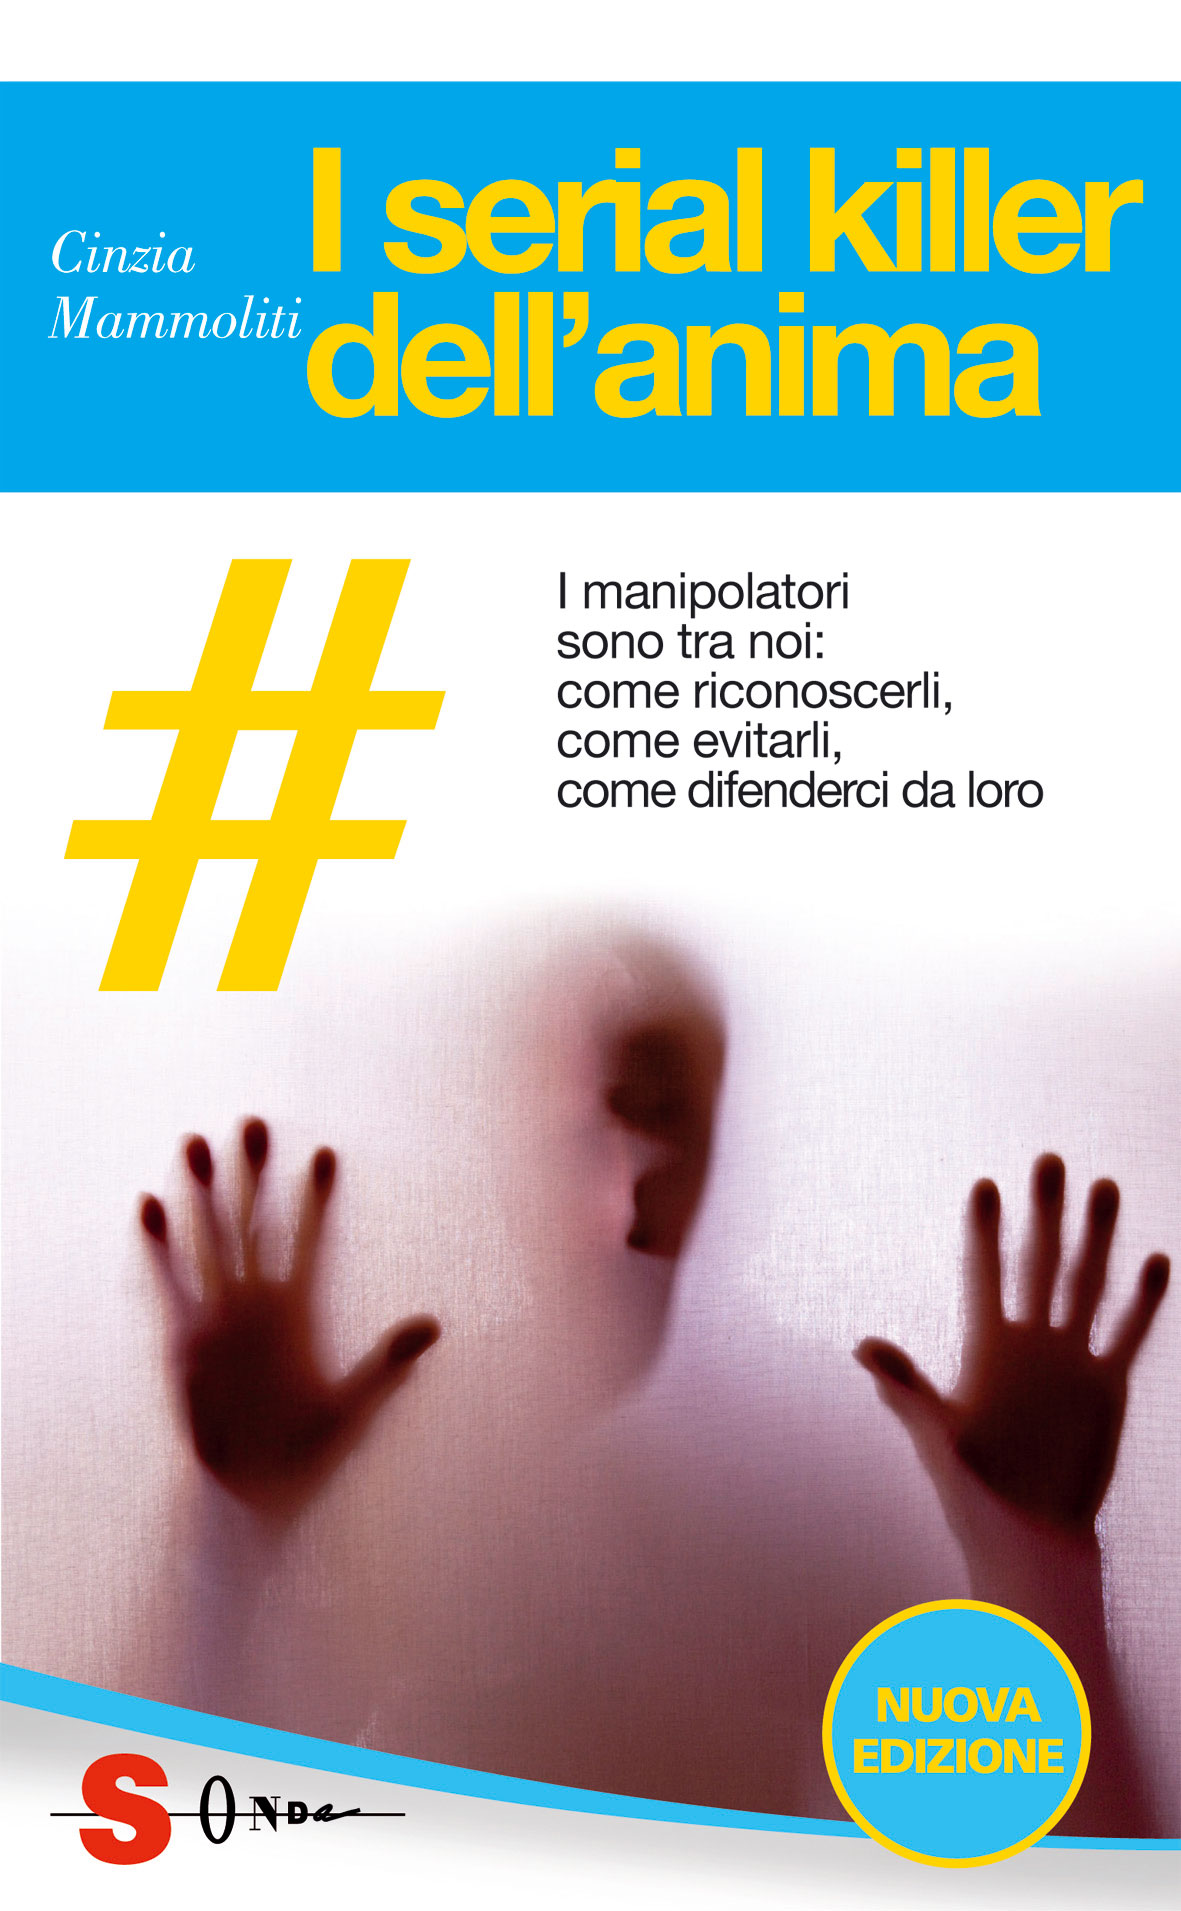 Cinzia Mammoliti 'I serial killer dell'anima' - Edizioni Sonda